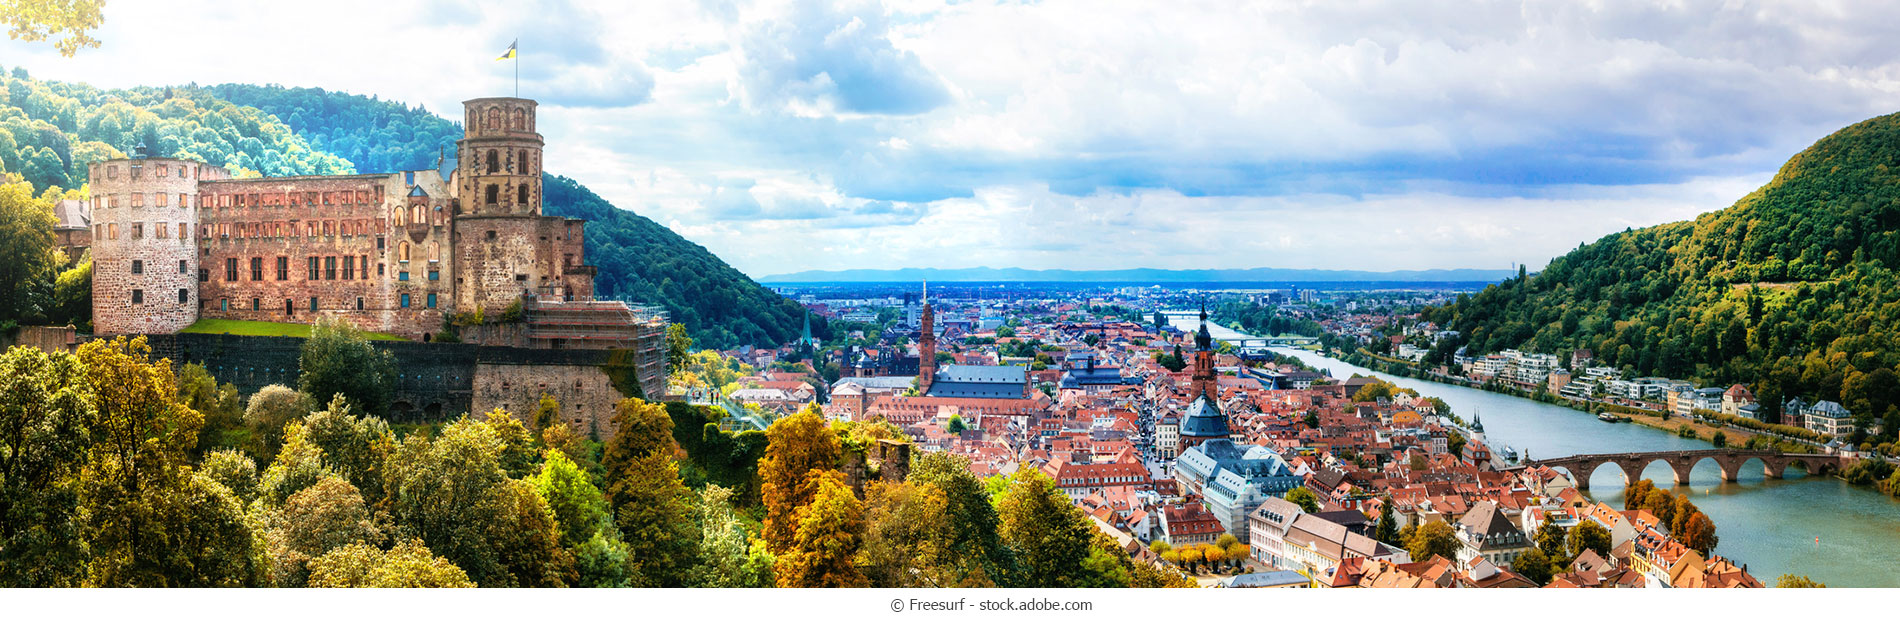 Heidelberg_Panorama_webC